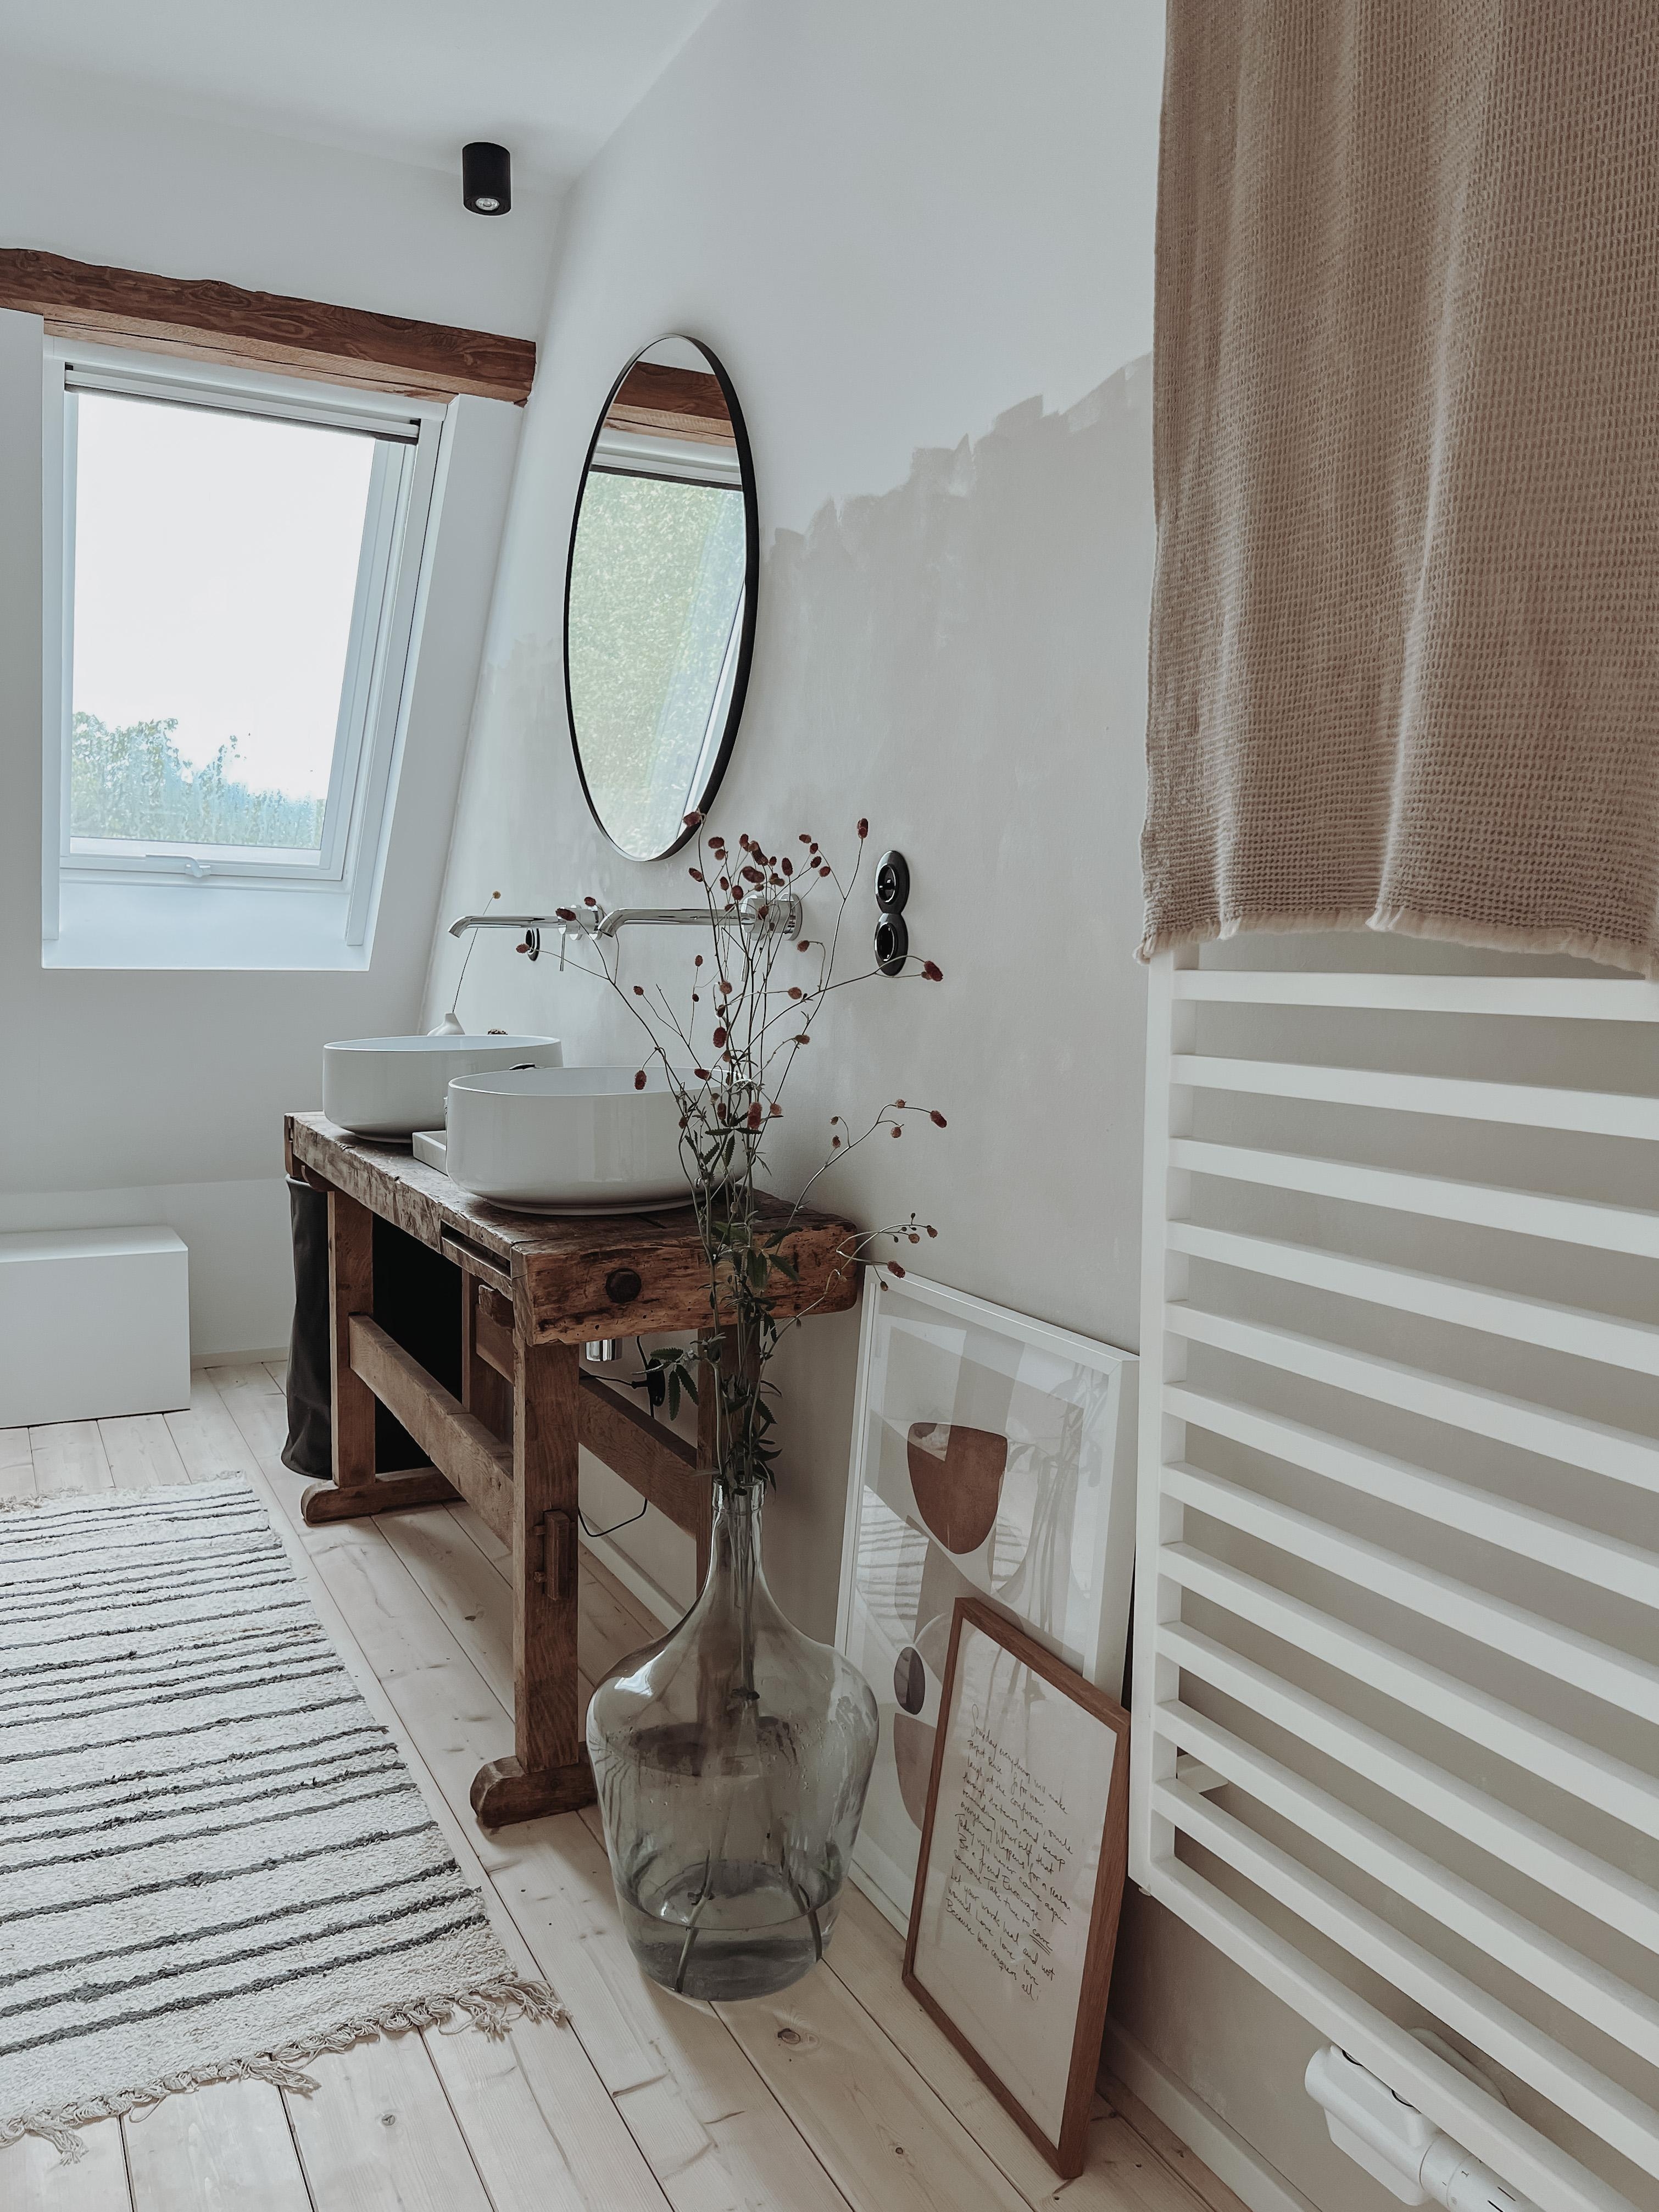 #badezimmer #bathroom #badezimmerinspiration #interior #interior4all #scandi #holdzboden #spiegel #werkbank #diy 